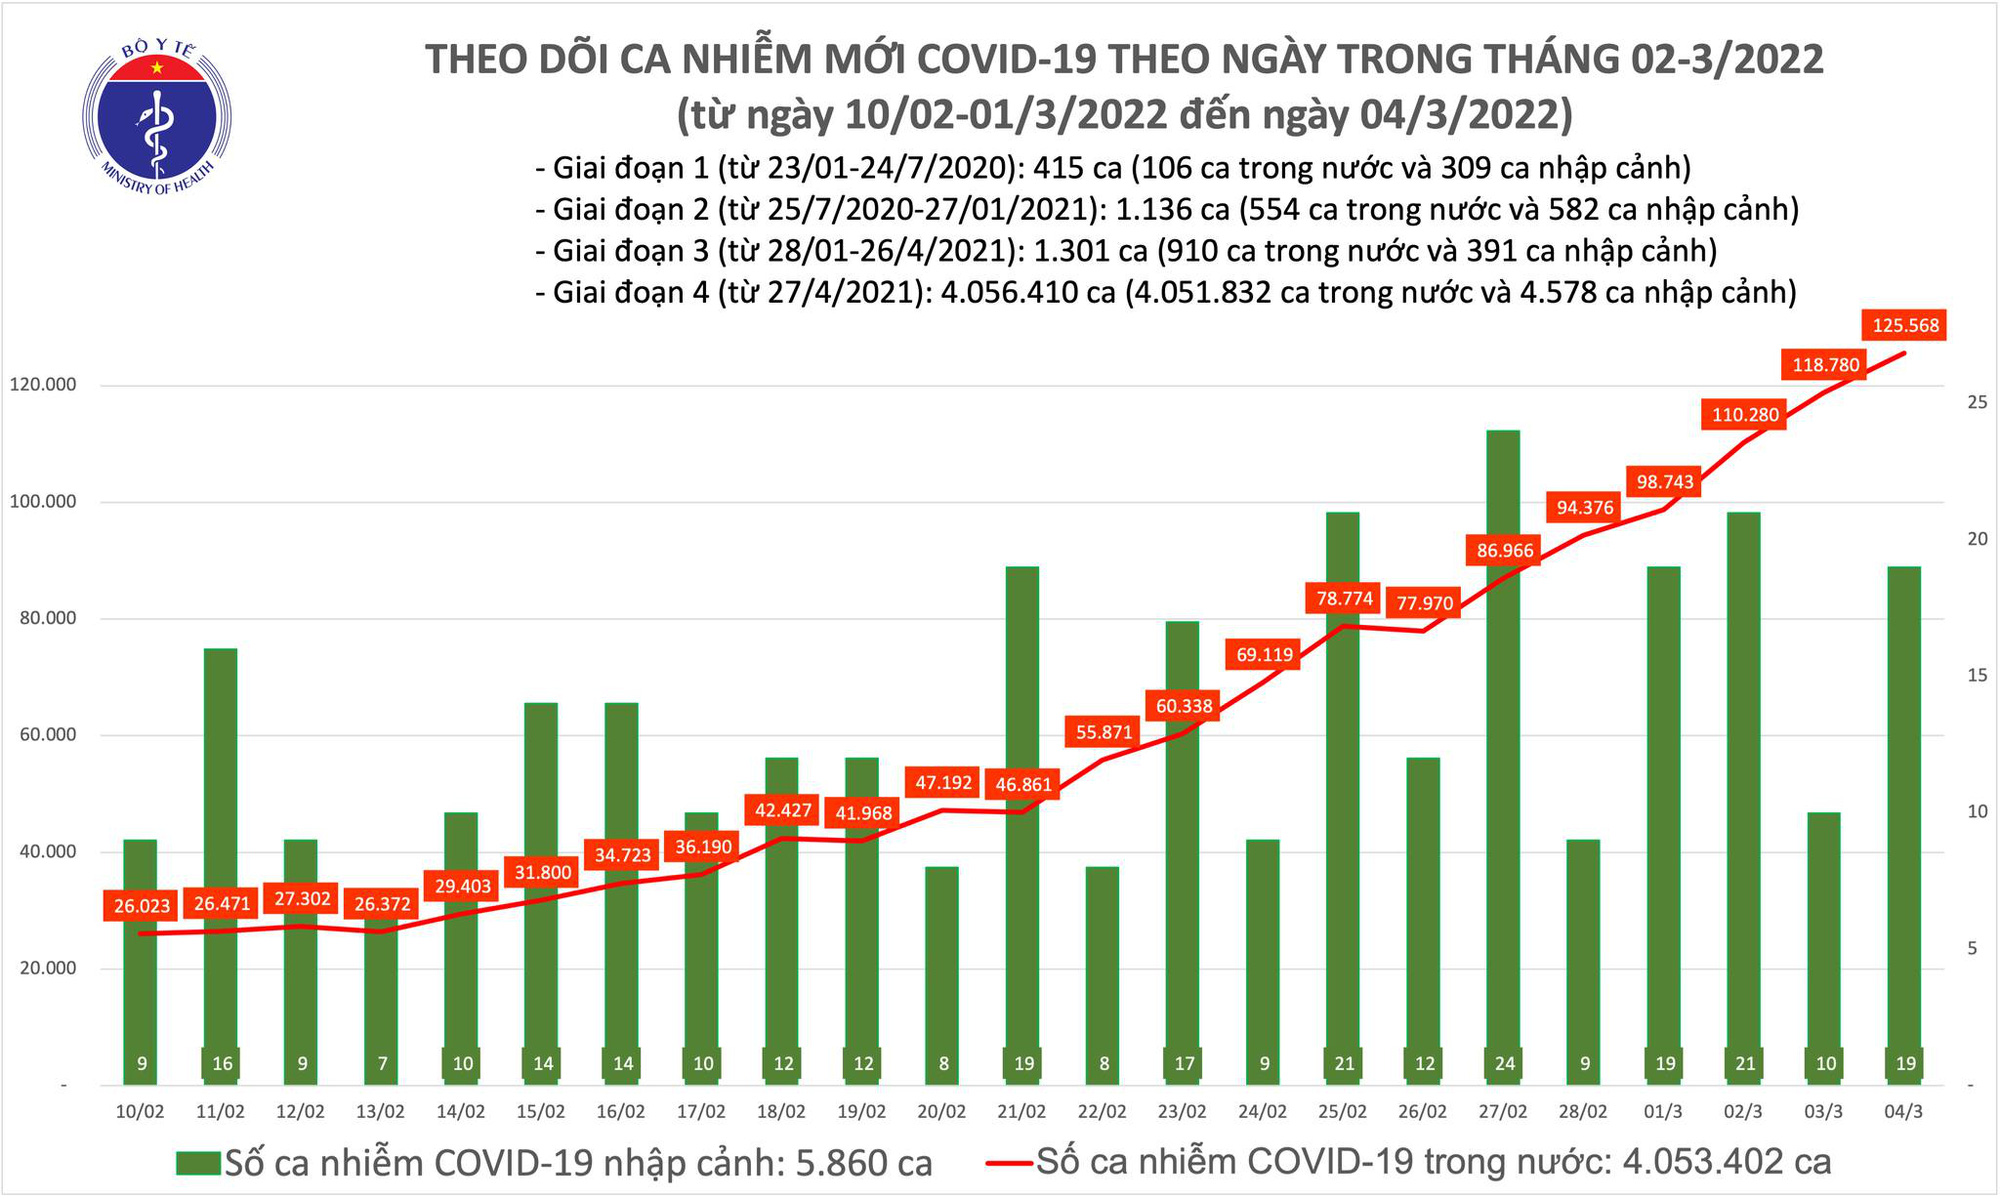 Covid-19 Bắc Ninh 2024: Bắc Ninh đã vượt qua đại dịch Covid-19 thành công để trở lại với cuộc sống bình thường. Năm 2024, Bắc Ninh sẽ tự hào là một trong những địa phương đầu tiên trong nước đạt được mục tiêu miễn dịch cộng đồng. Mời bạn đến và tham quan các khu du lịch trải nghiệm thực tế về sự chống đẩy Covid-19 này.